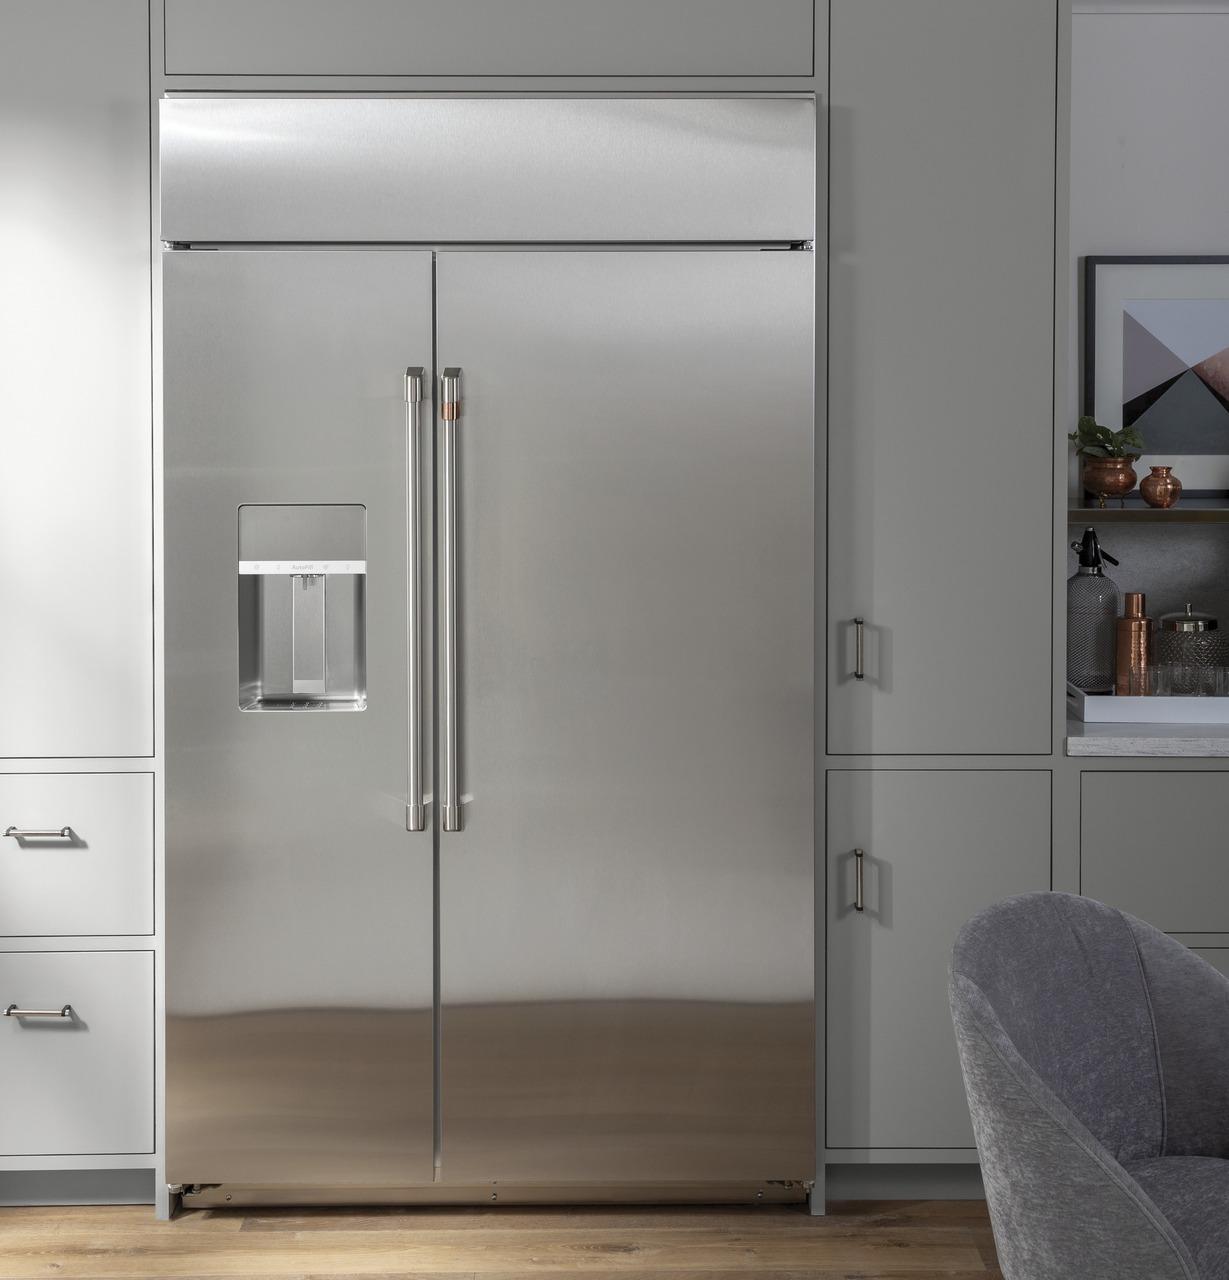 Cafe Caf(eback)™ 42" Smart Built-In Side-by-Side Refrigerator with Dispenser